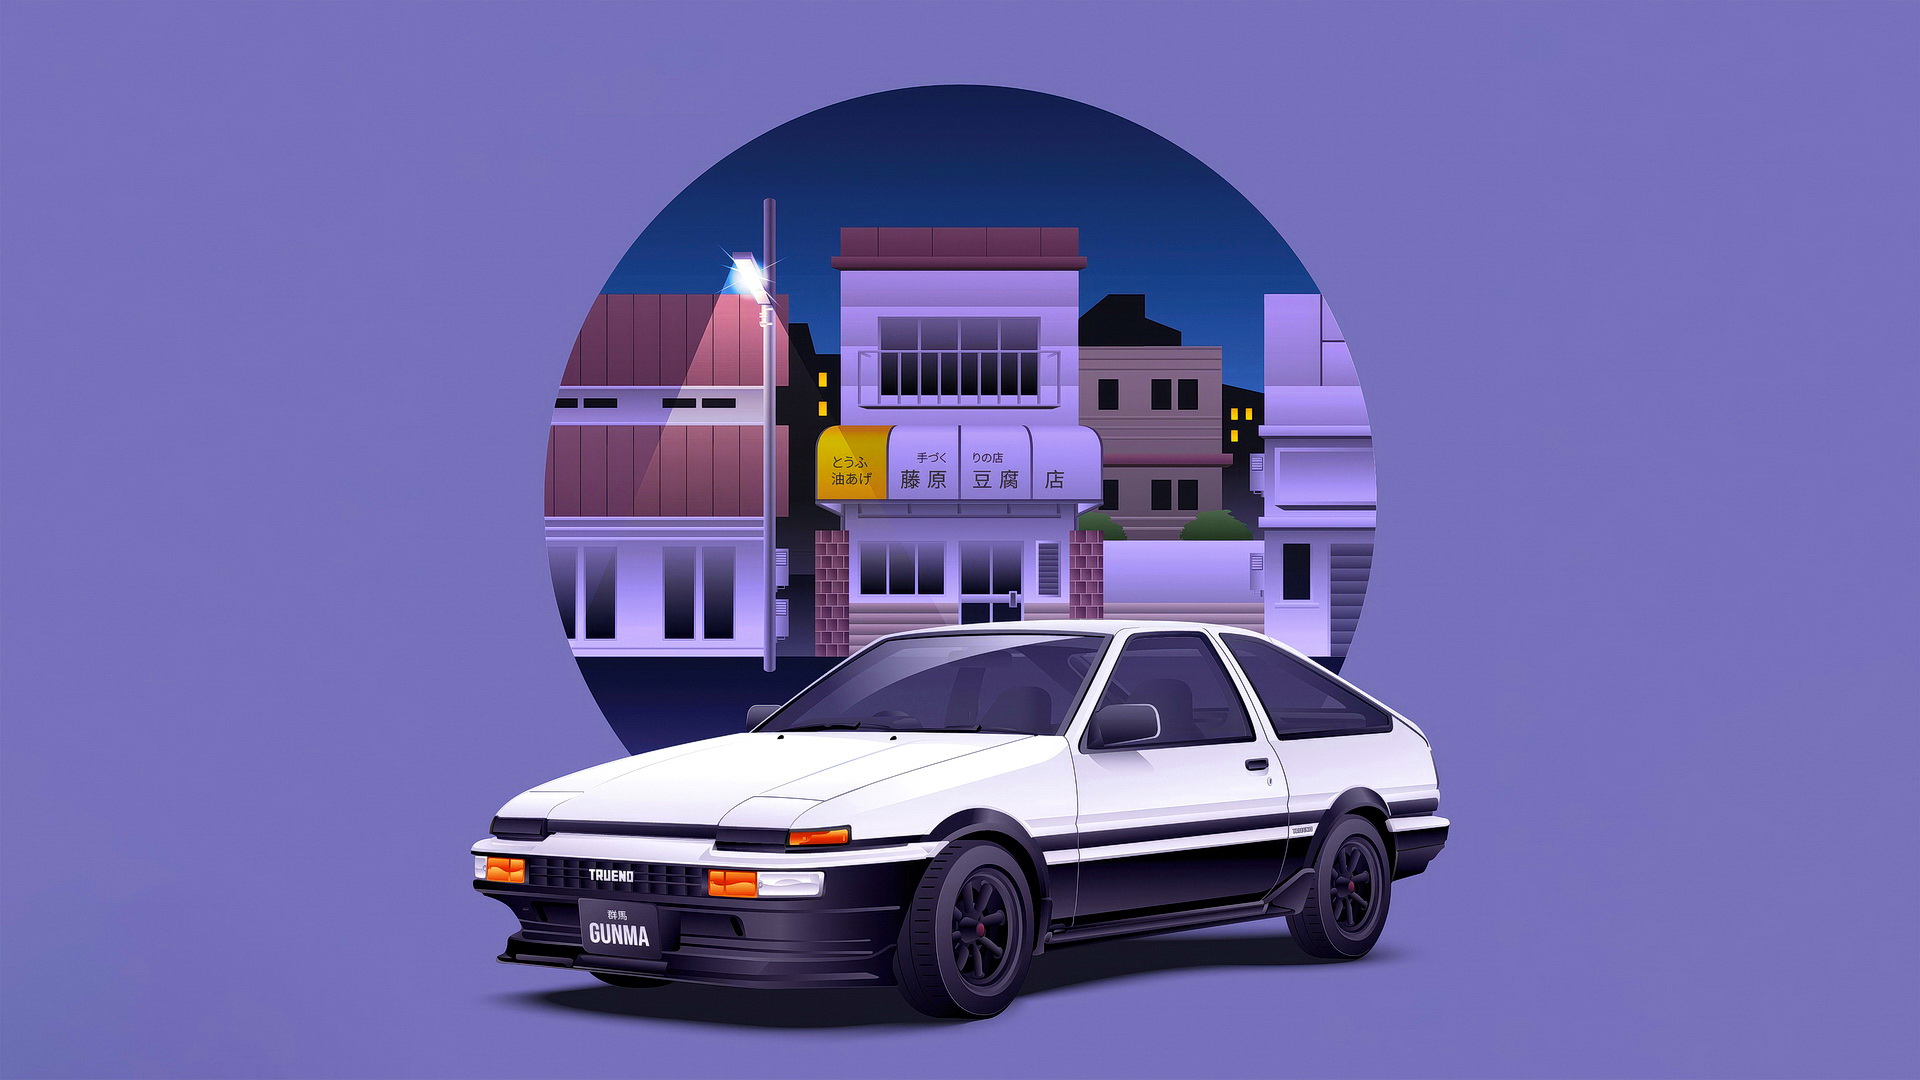 Бесплатное фото Город и автомобиль на сиреневом фоне